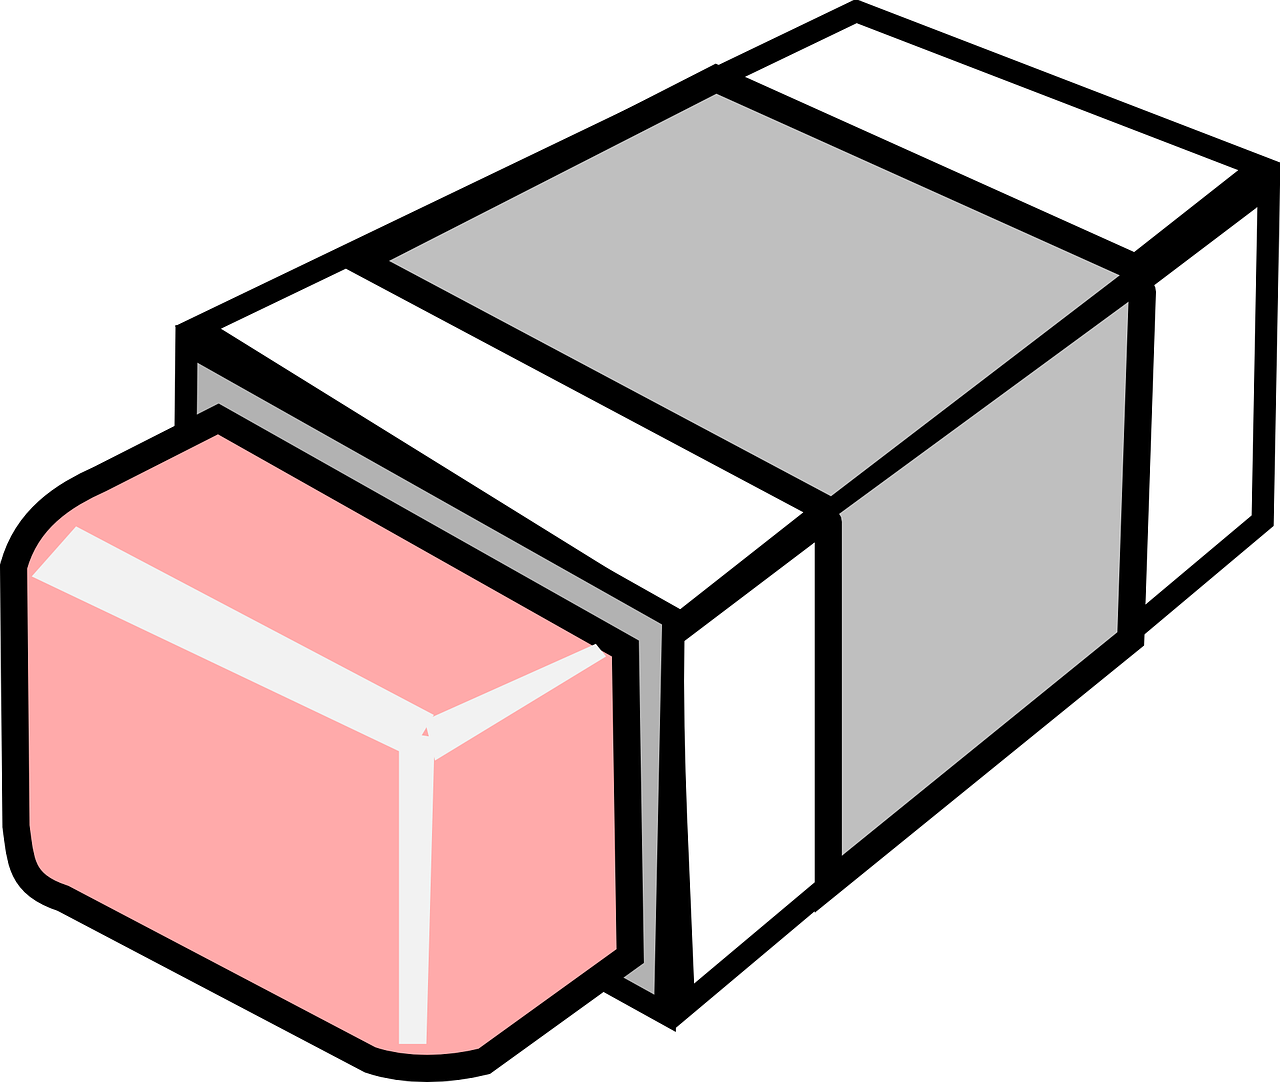 Pink Eraser Isometric Illustration PNG image